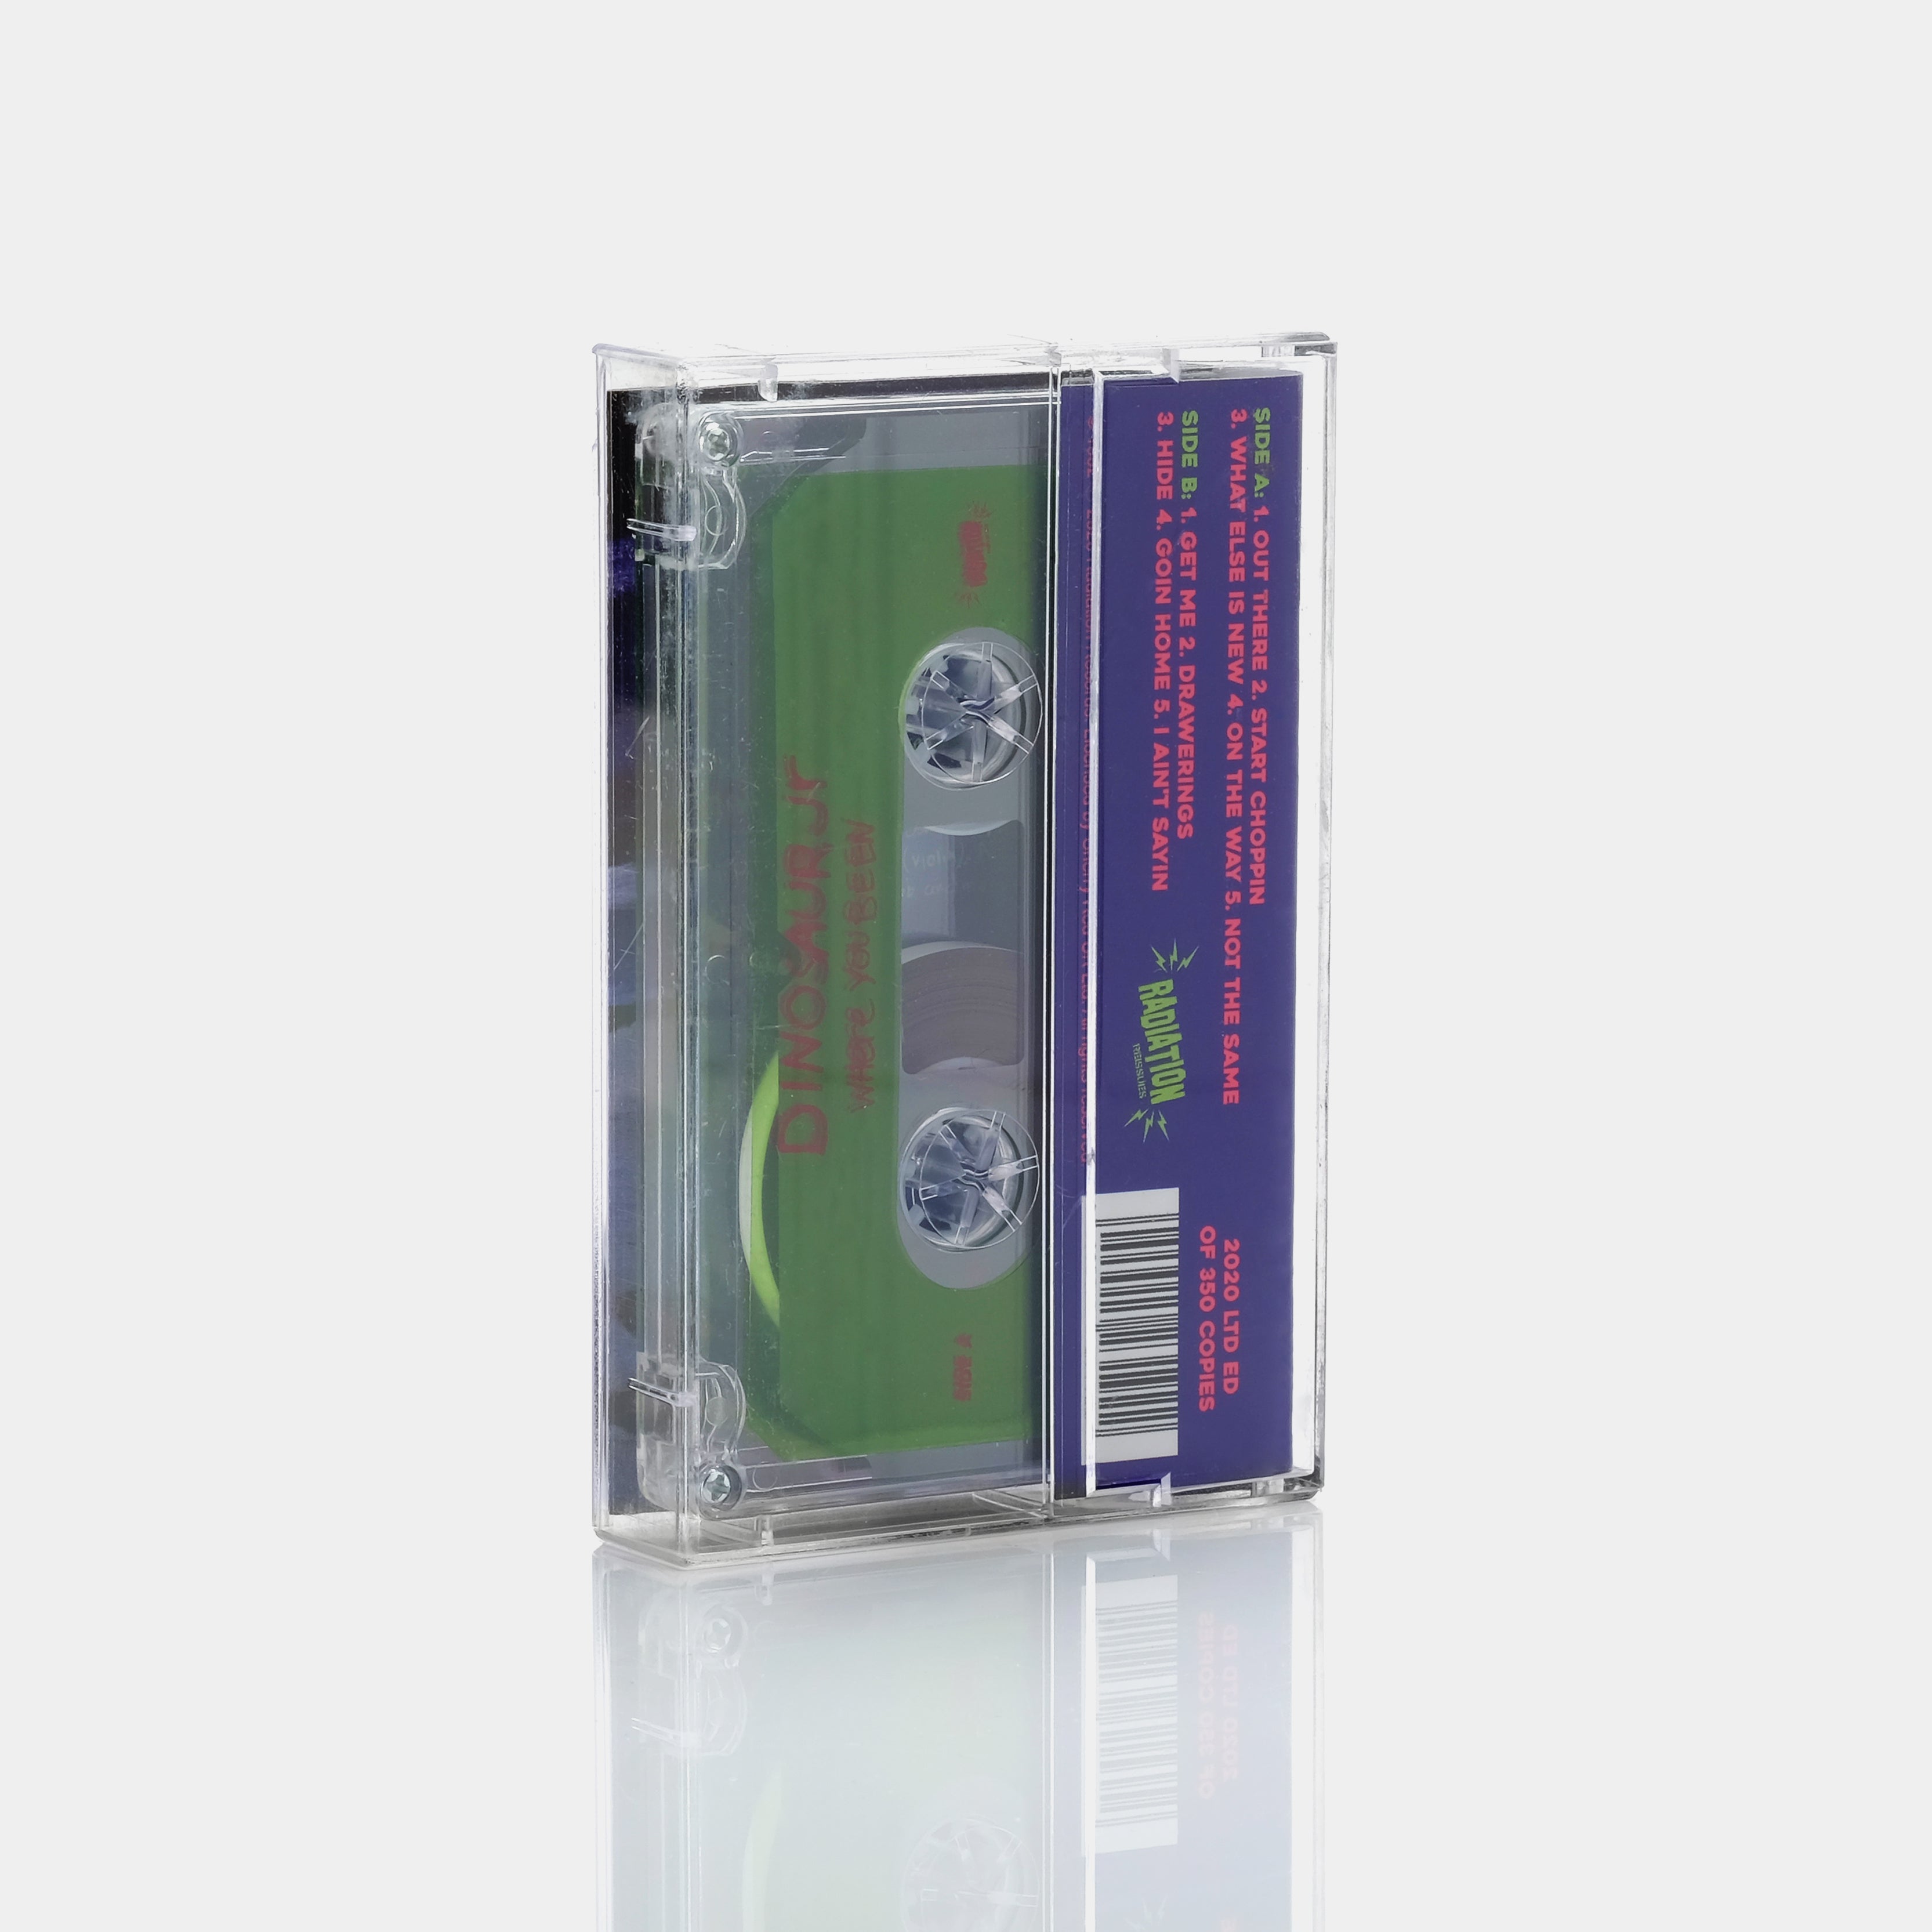 Dinosaur Jr. - Where You Been Cassette Tape